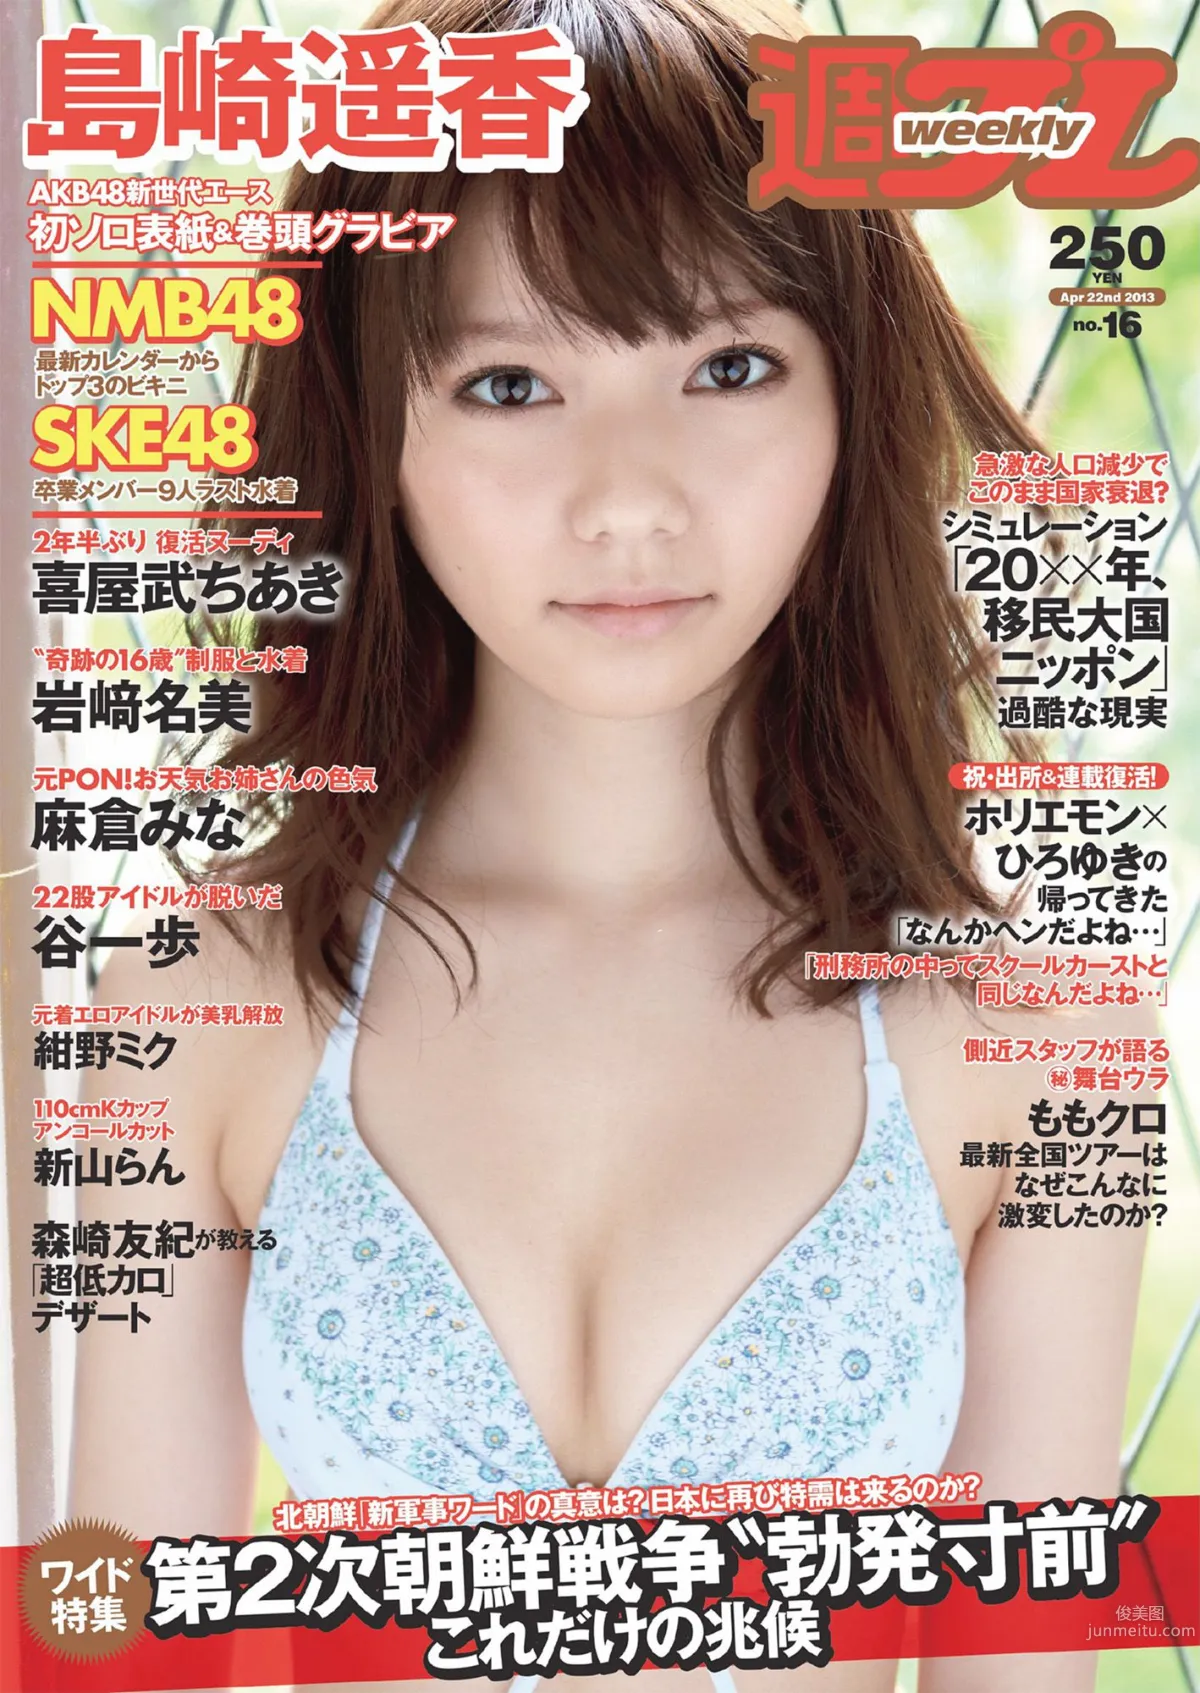 AKB48 SKE48 NMB48 島崎遙香 [Weekly Playboy] 2013年No.16 写真杂志1